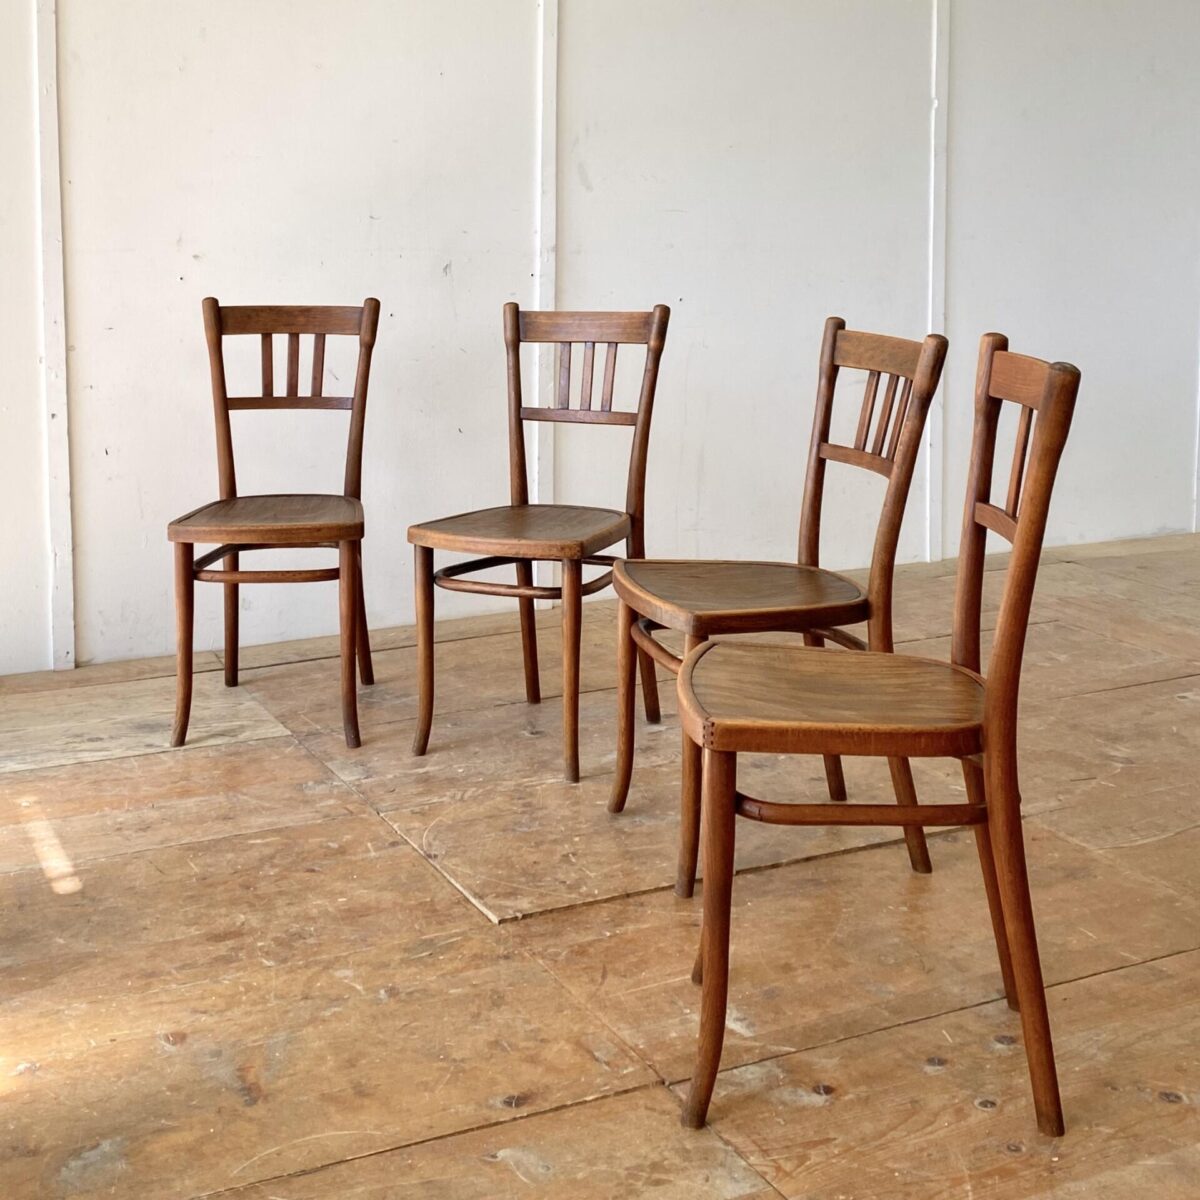 Deuxieme.shop Thonet Stühle Wienerstühle Bugholz Stühle designklassiker. 4er Set dunkelbraune Bistrostühle von Thonet. Die Stühle haben eine warm-matte Alterspatina und sind in stabilem Zustand. 